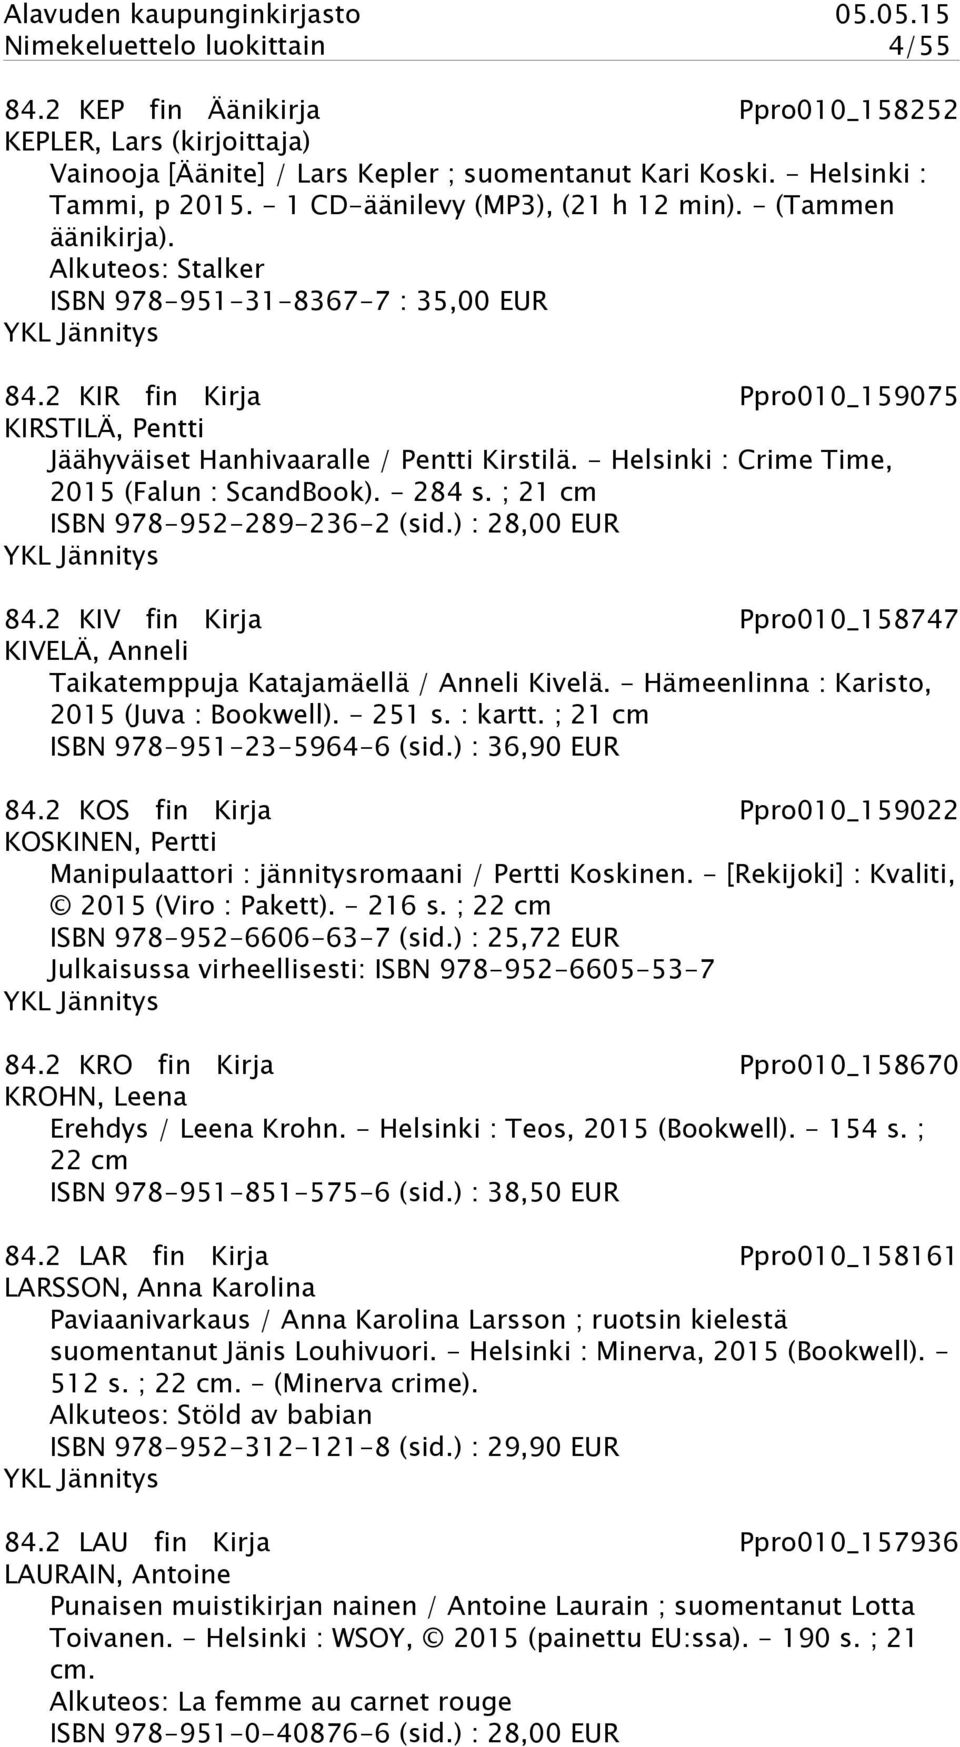 2 KIR fin Kirja Ppro010_159075 KIRSTILÄ, Pentti Jäähyväiset Hanhivaaralle / Pentti Kirstilä. - Helsinki : Crime Time, 2015 (Falun : ScandBook). - 284 s. ; 21 cm ISBN 978-952-289-236-2 (sid.